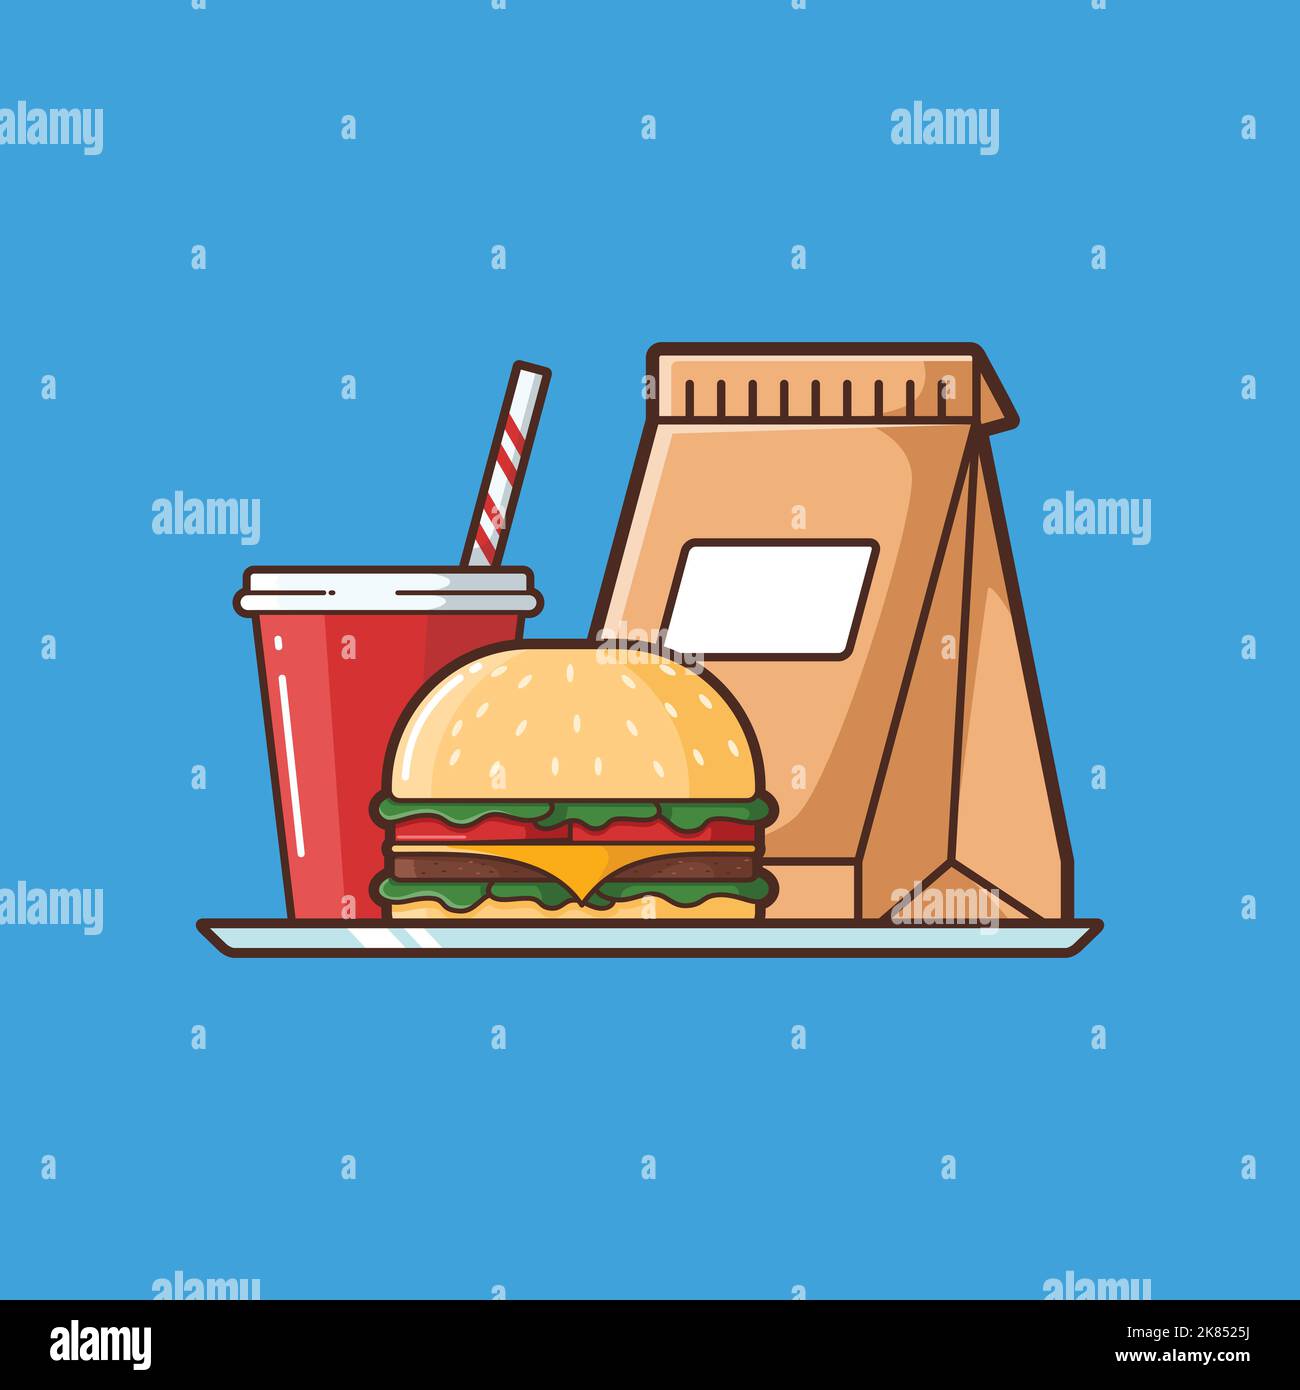 Illustration von Burger und Softtakeout - Vektor-Illustration Design - Food Logo - Food Illustration - Fast Food Illustration Stock Vektor